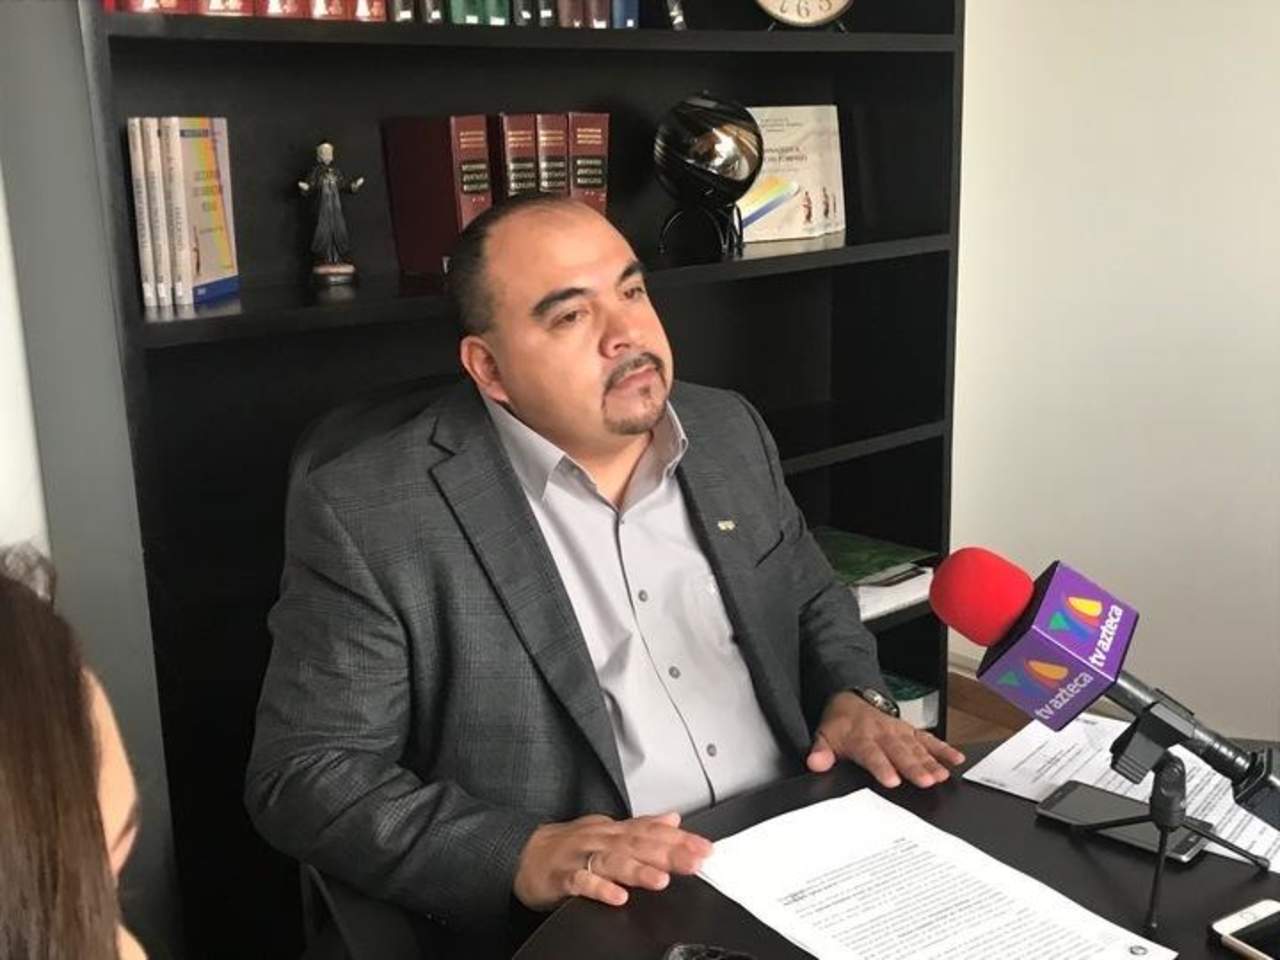 Galdino Torrecillas Herrera, informó que ya van más de mil amparos promovidos por 100 exfuncionarios, lo que ha impedido más detenciones. (ARCHIVO)

